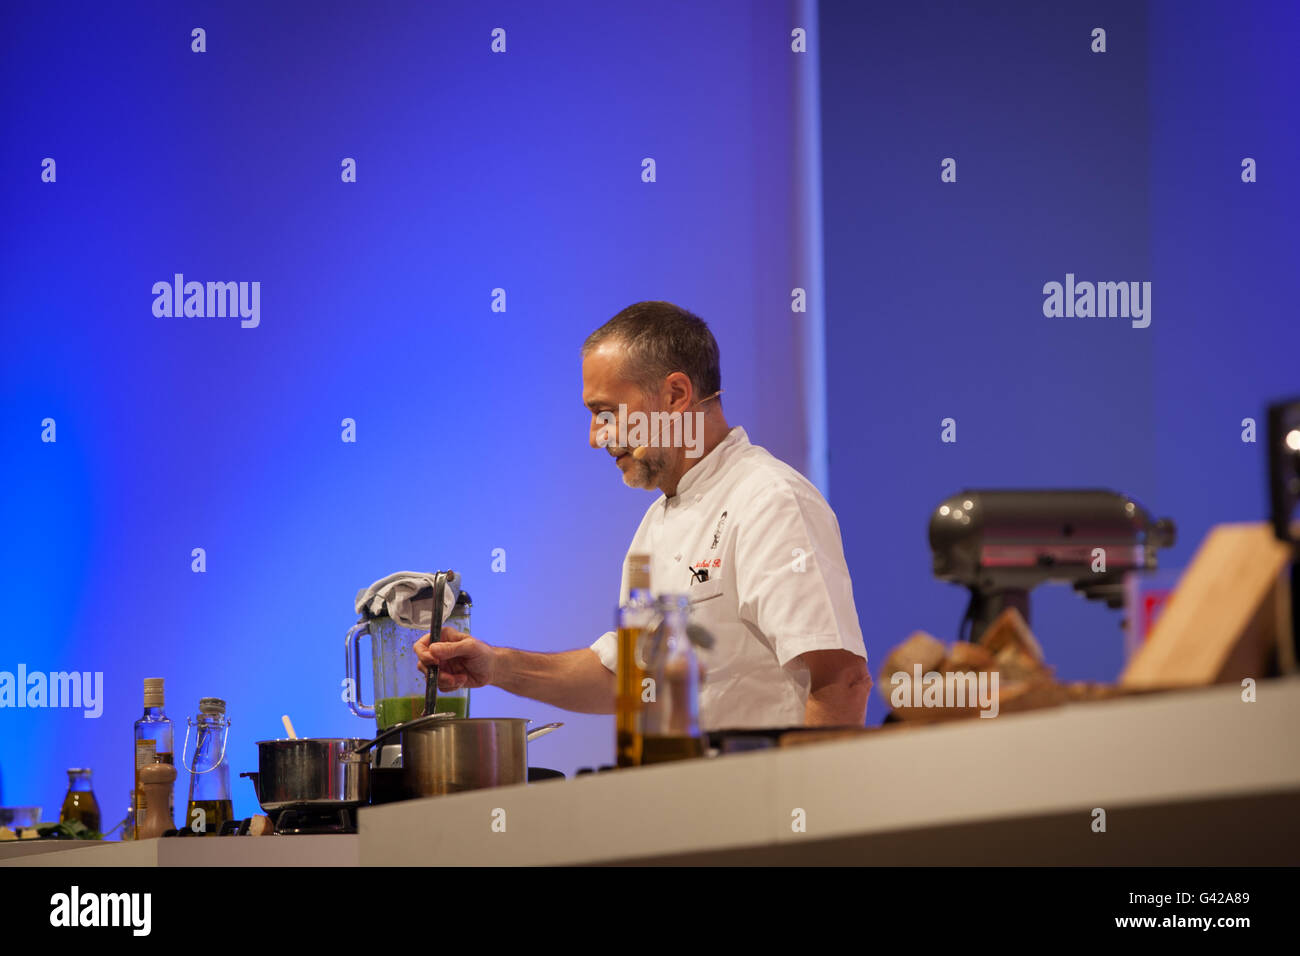 Birmingham, Reino Unido. 18 de junio de 2016. Michel Roux jr haciendo una demostración de cocina en el Teatro Super Crédito: Steven roe/Alamy Live News Foto de stock